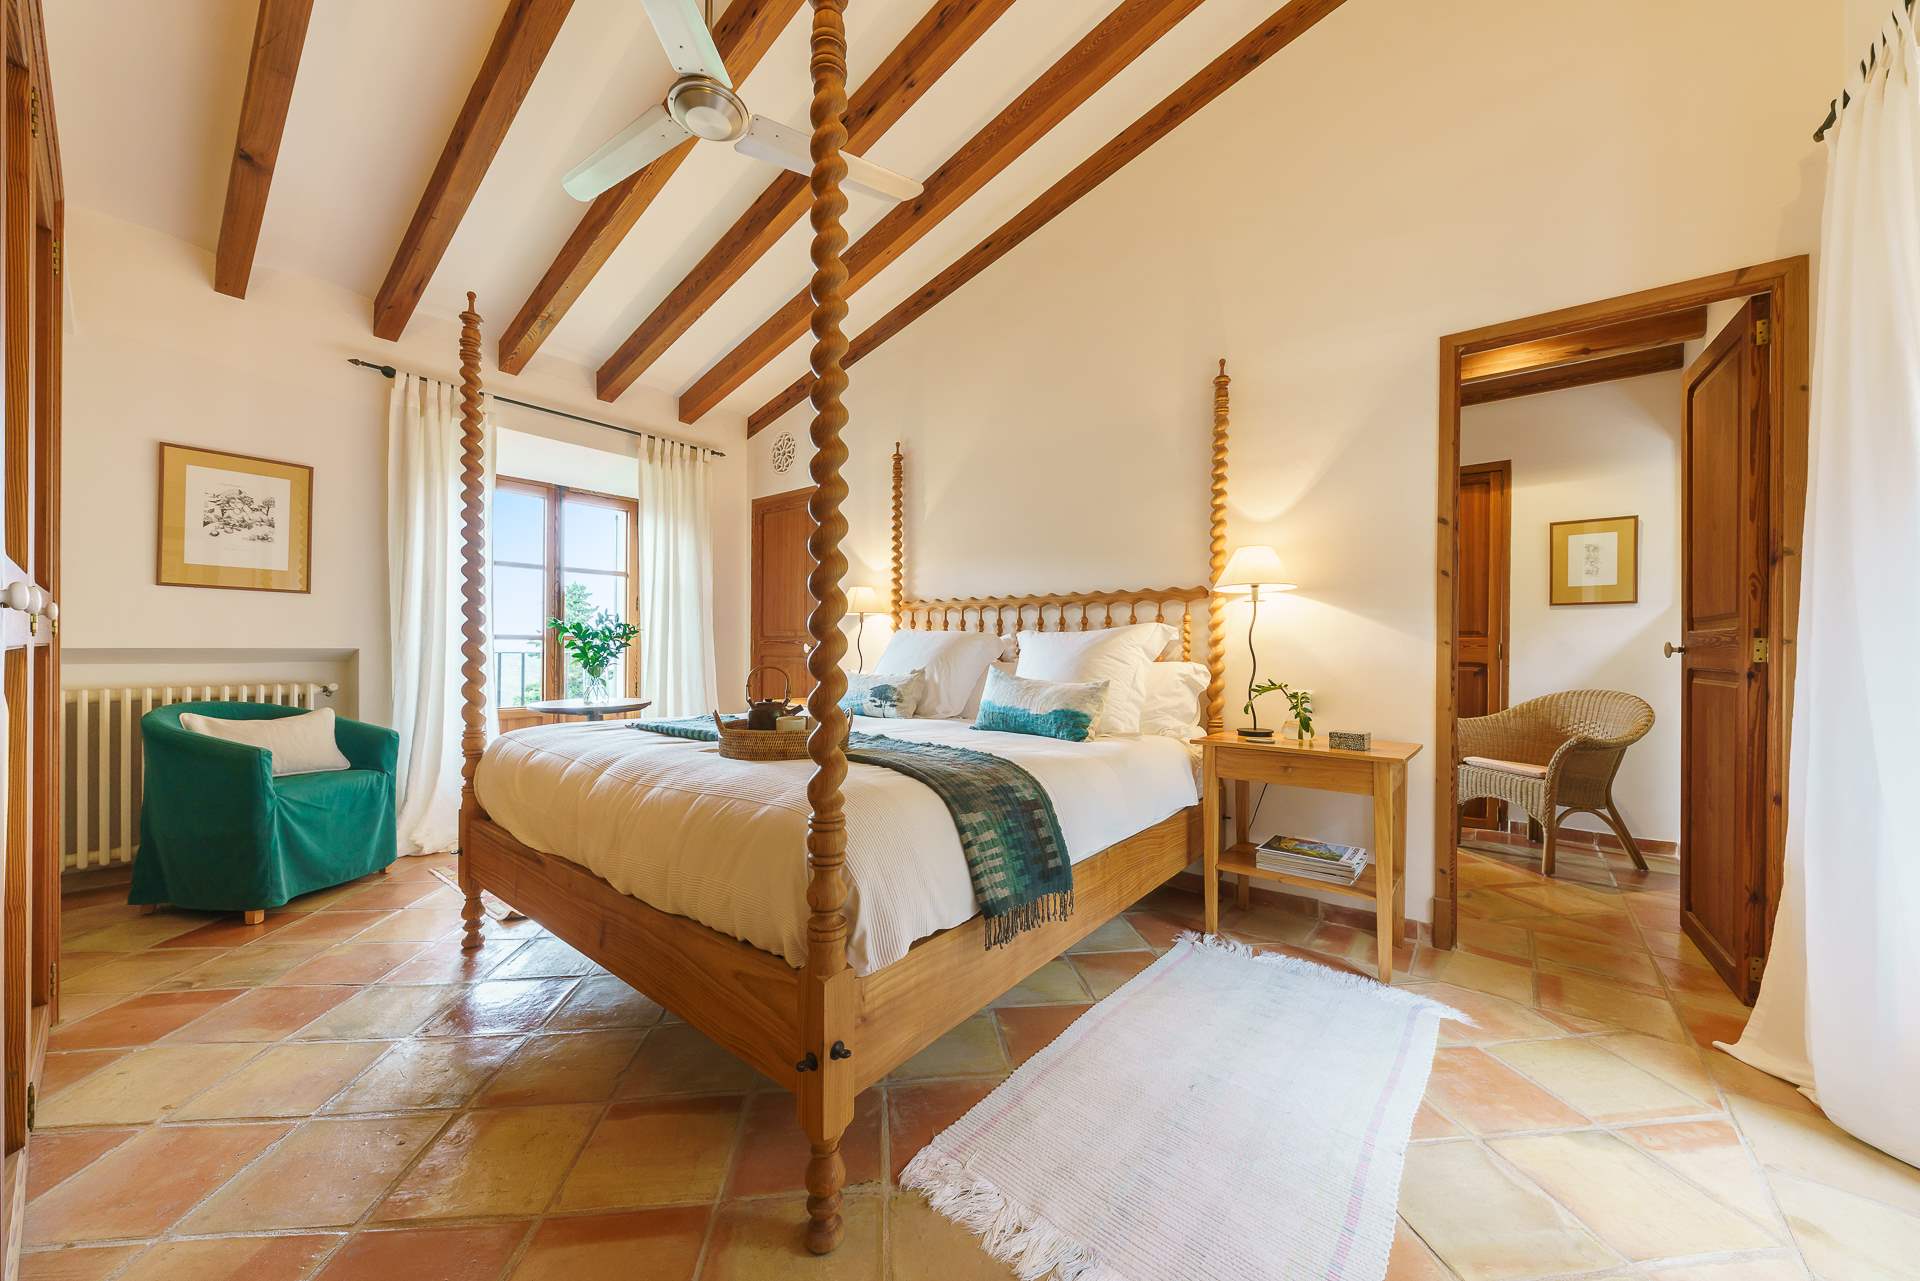 Sa Tanca, 3 Bedroom Rental, 3 bedroom villa in Soller & Deia, Majorca Photo #22